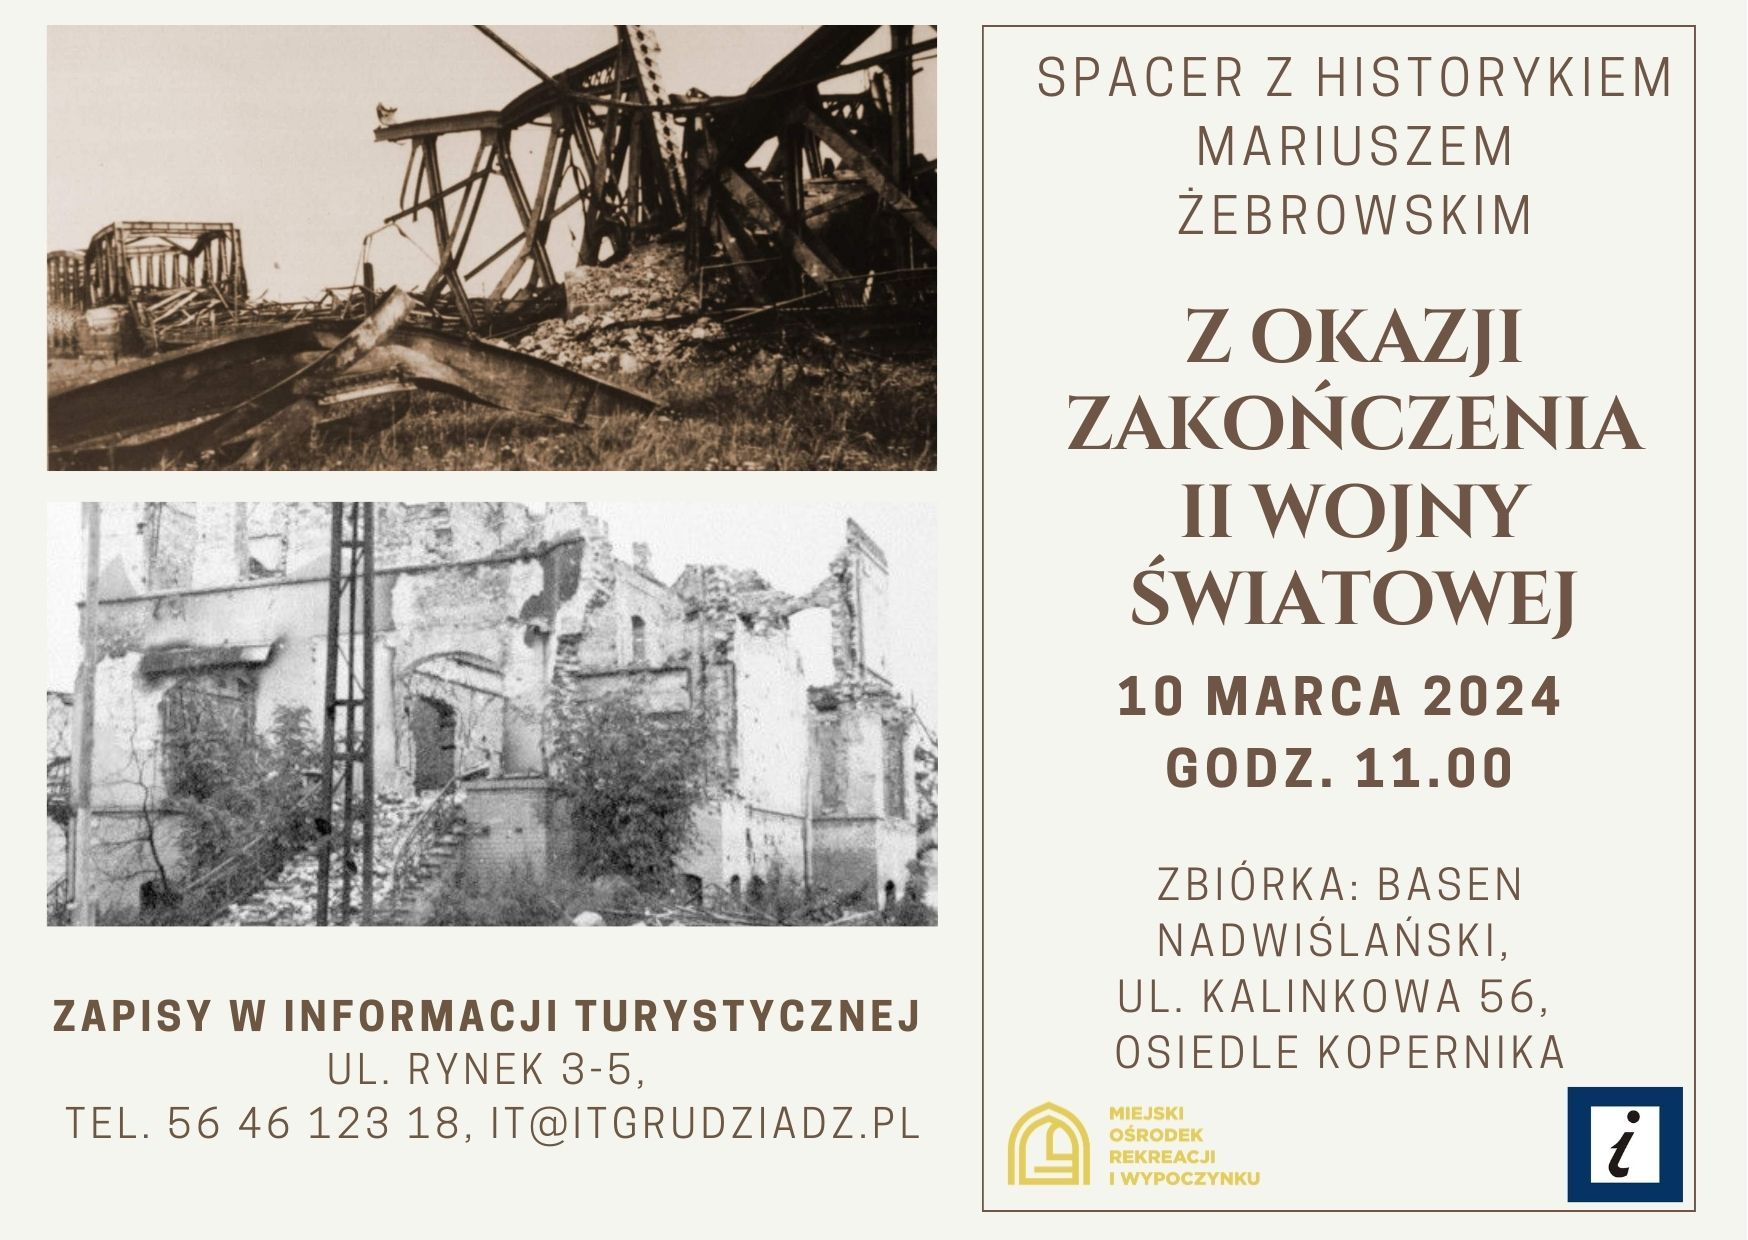 Spacer z historykiem Mariuszem Żebrowskim z okazji zakończenia II wojny światowej 10 marca 2024